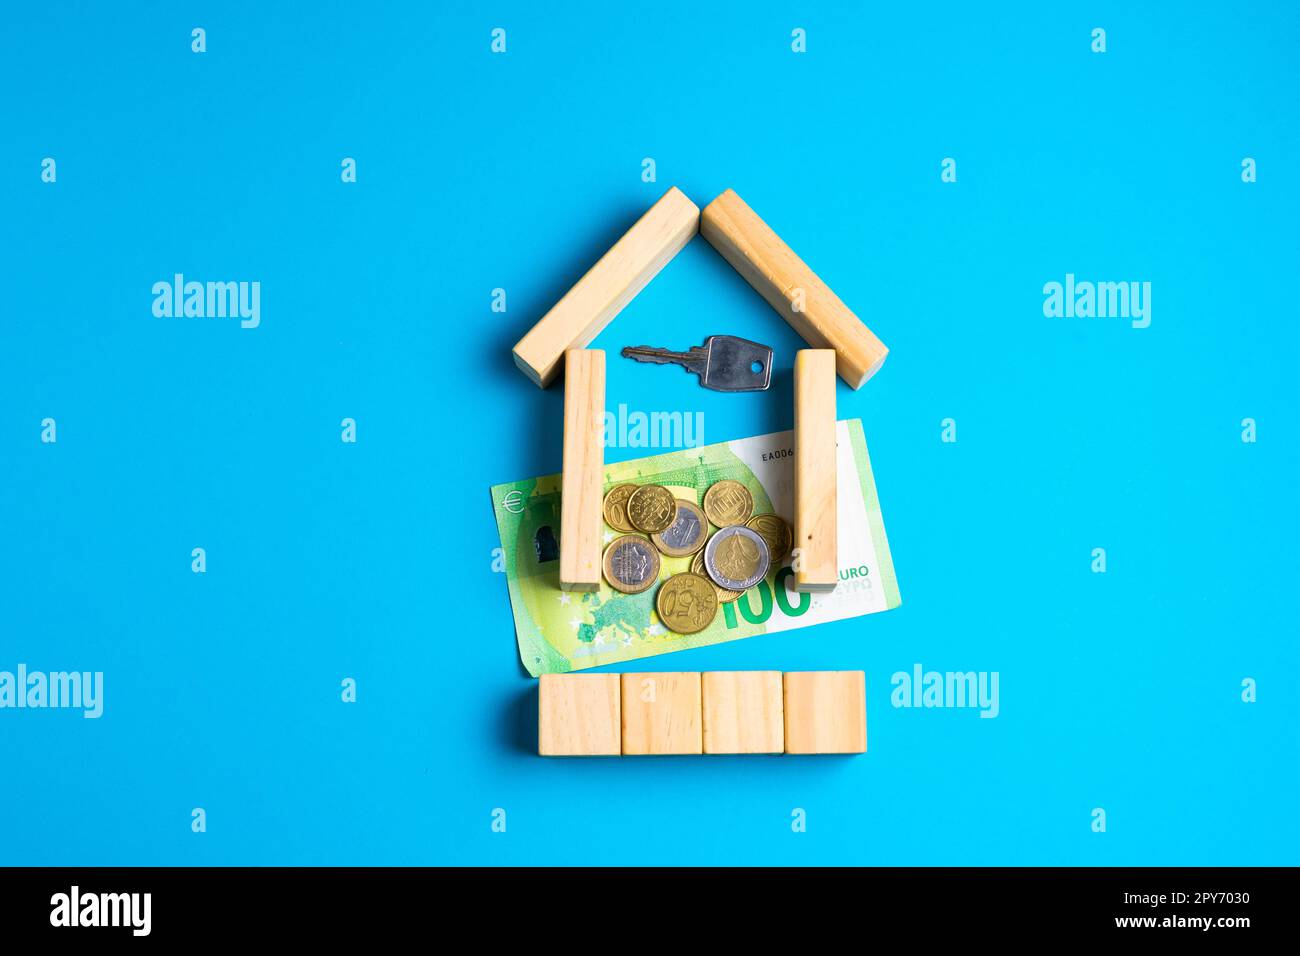 Casa giocattolo in legno con chiavi blu. Spazio vuoto per inserire testo o altro. Foto Stock